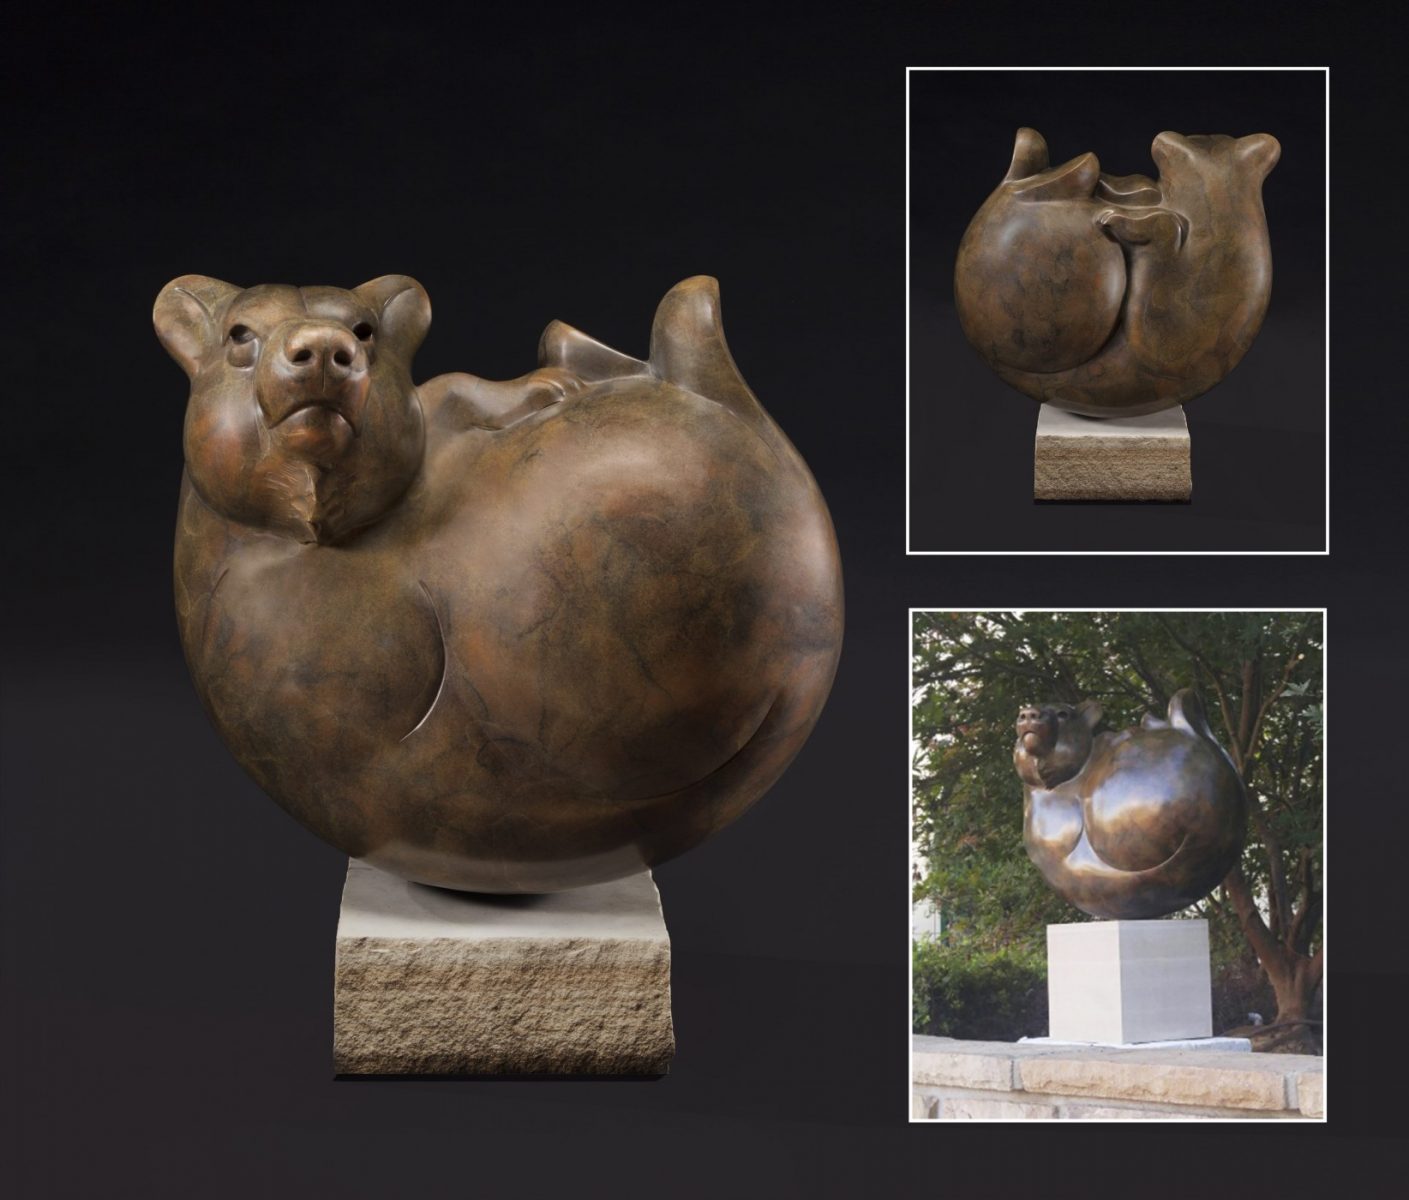 Bear Ball bronze bear sculpture by Tim Cherry